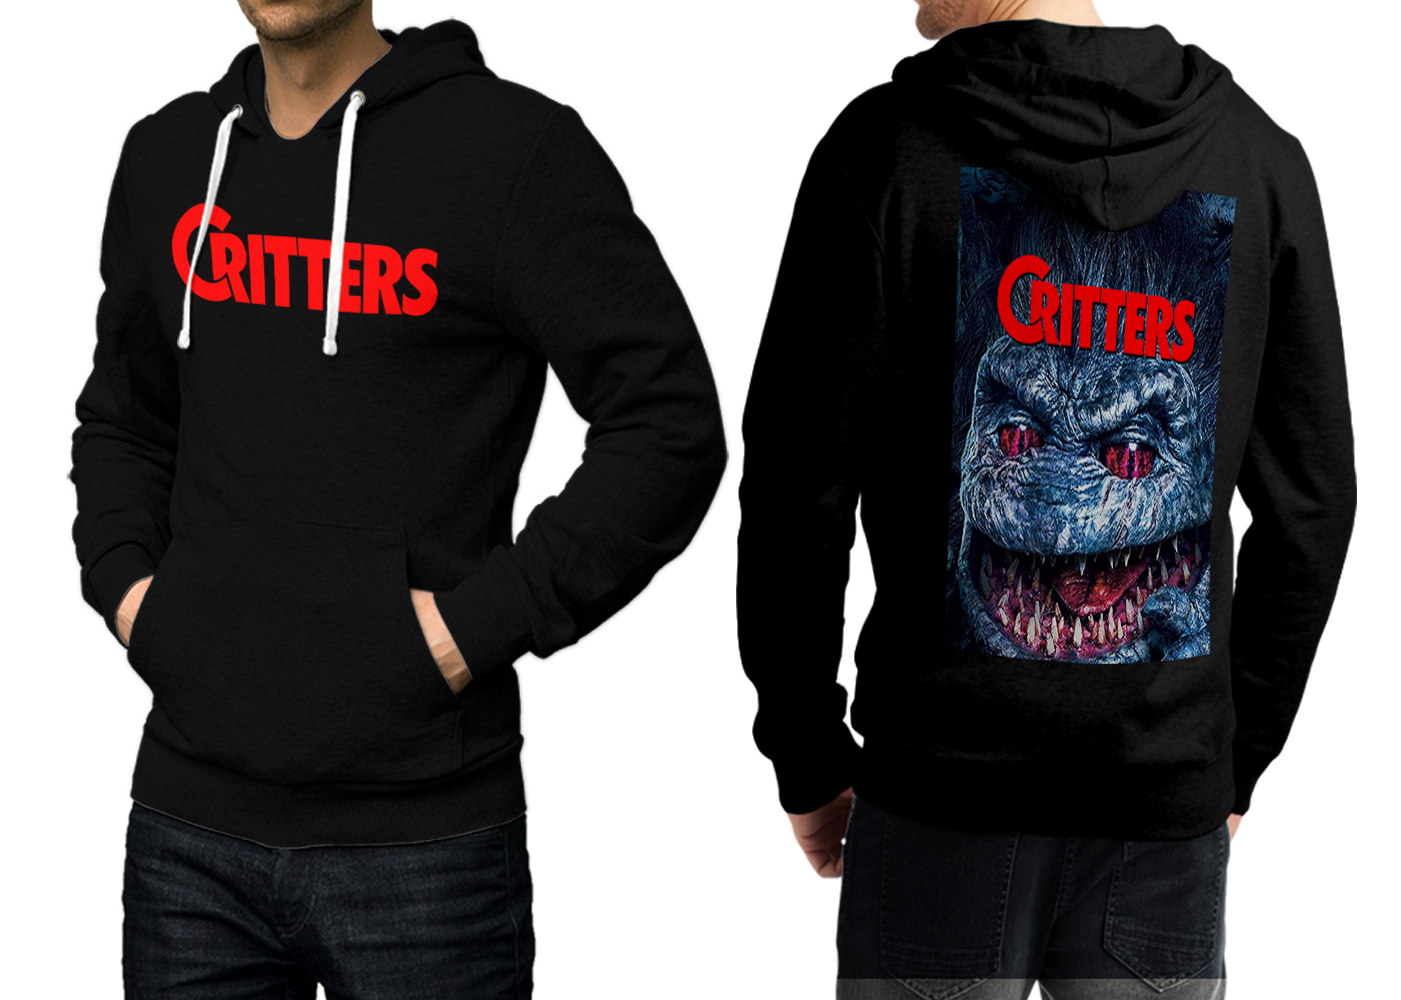 Critters Movie Black Hoodie Jacket Coat Casual Sweatshirt For men